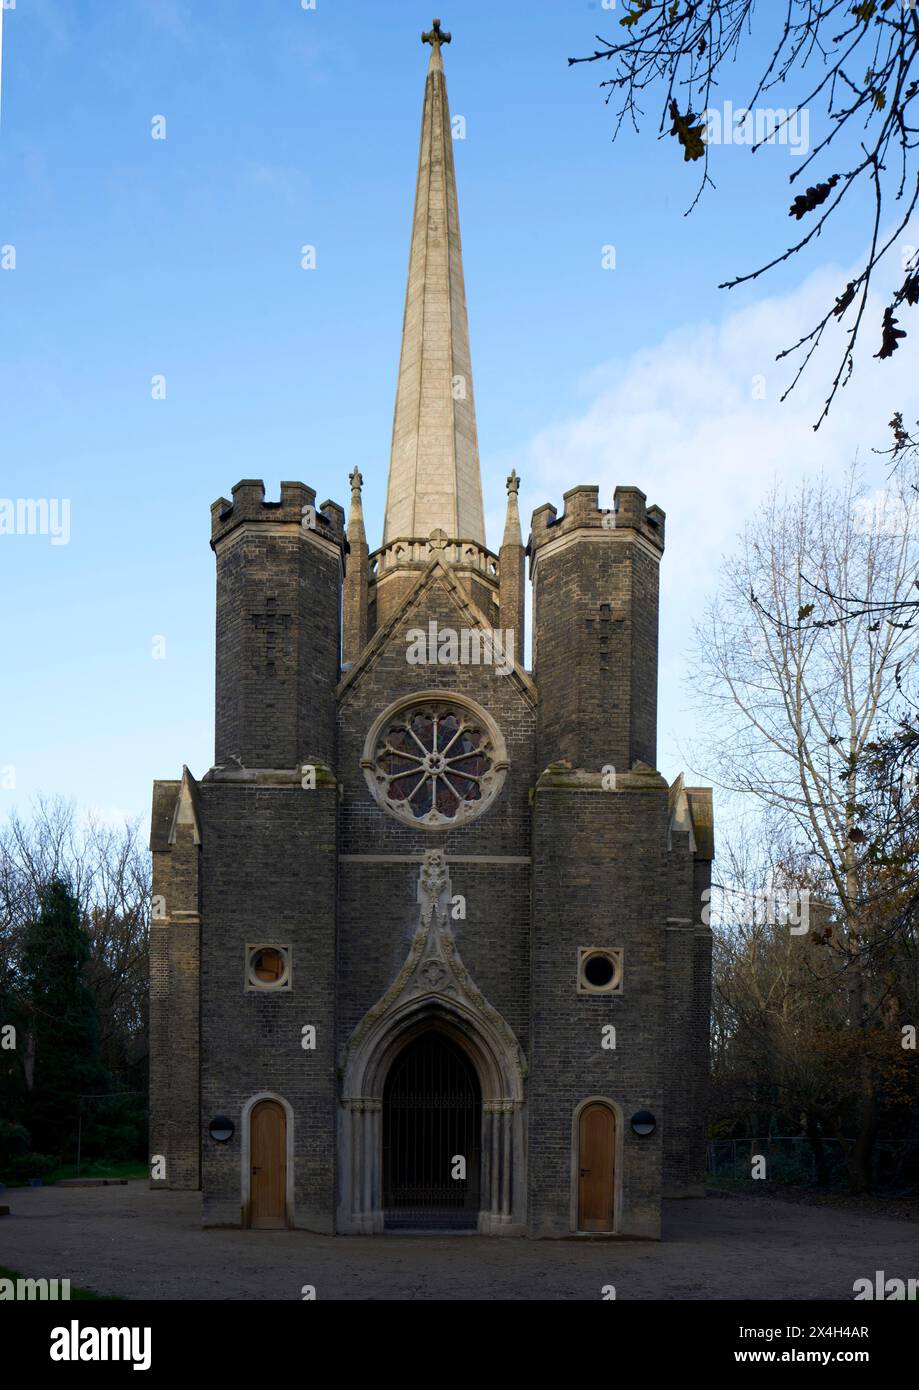 Élévation de l'entrée principale. Abney Park Chapel, Londres, Royaume-Uni. Architecte : Kaner Olette Architects, 2023. Banque D'Images